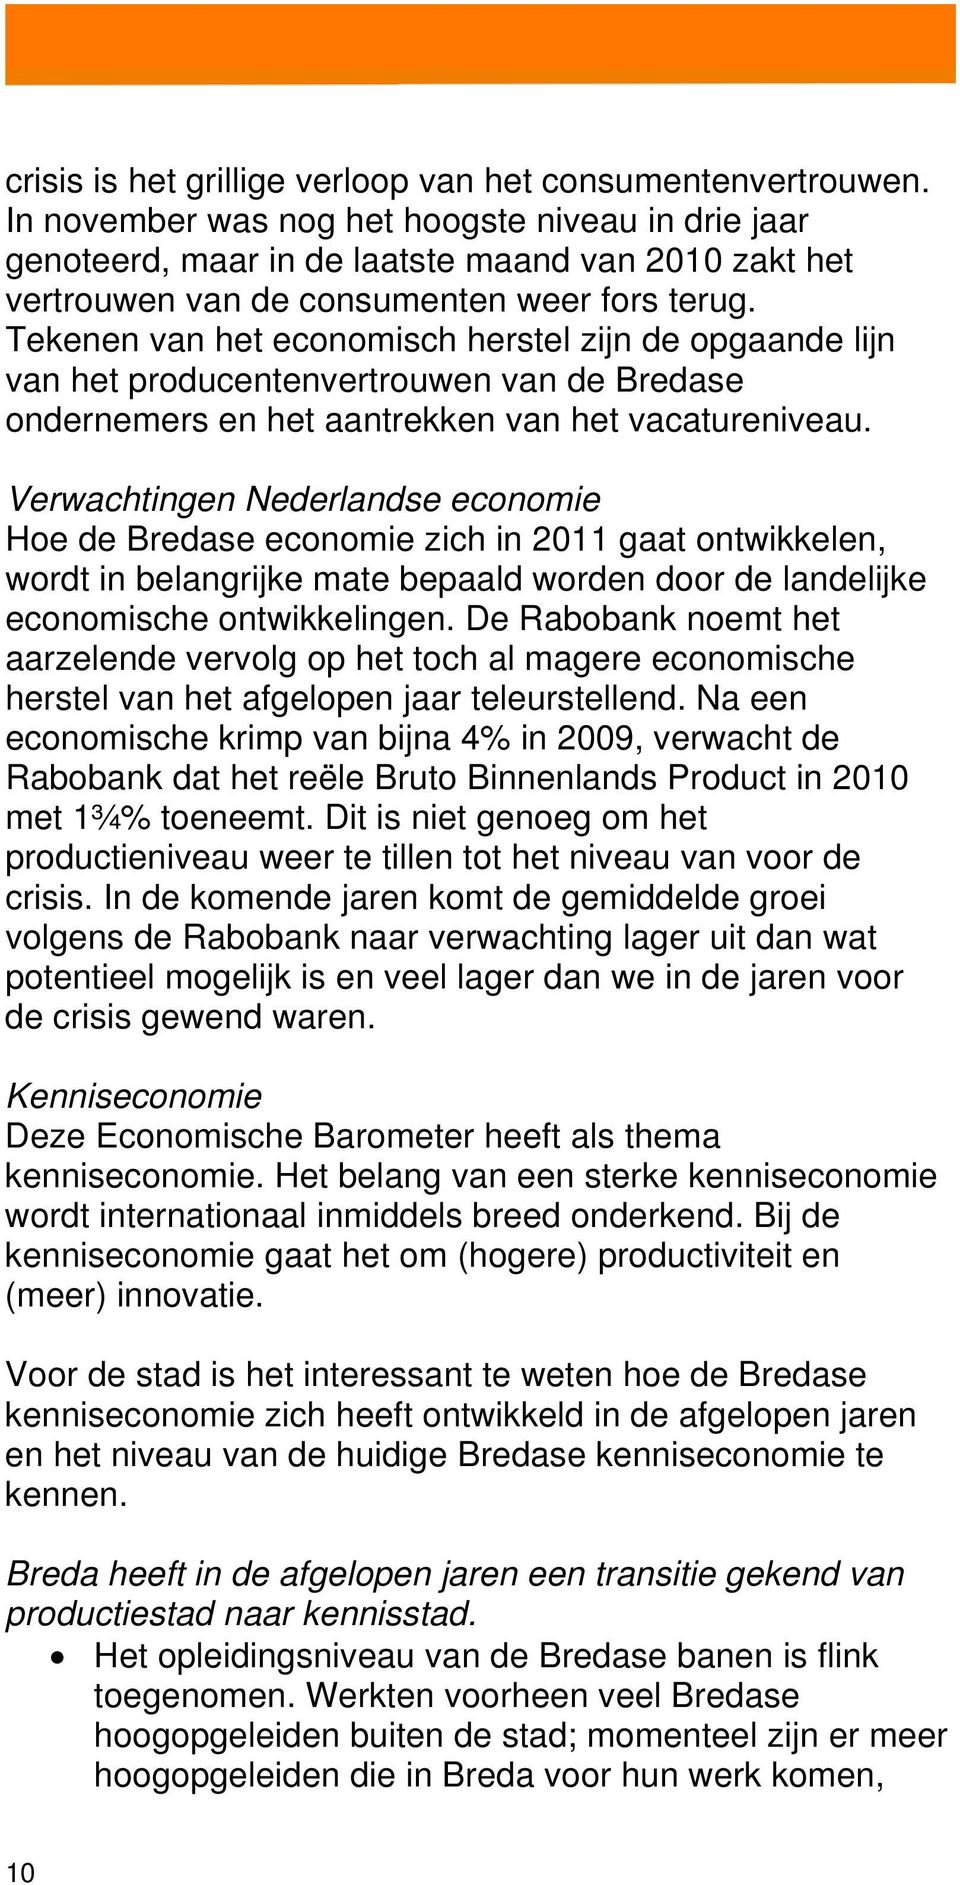 Tekenen van het economisch herstel zijn de opgaande lijn van het producentenvertrouwen van de Bredase ondernemers en het aantrekken van het vacatureniveau.